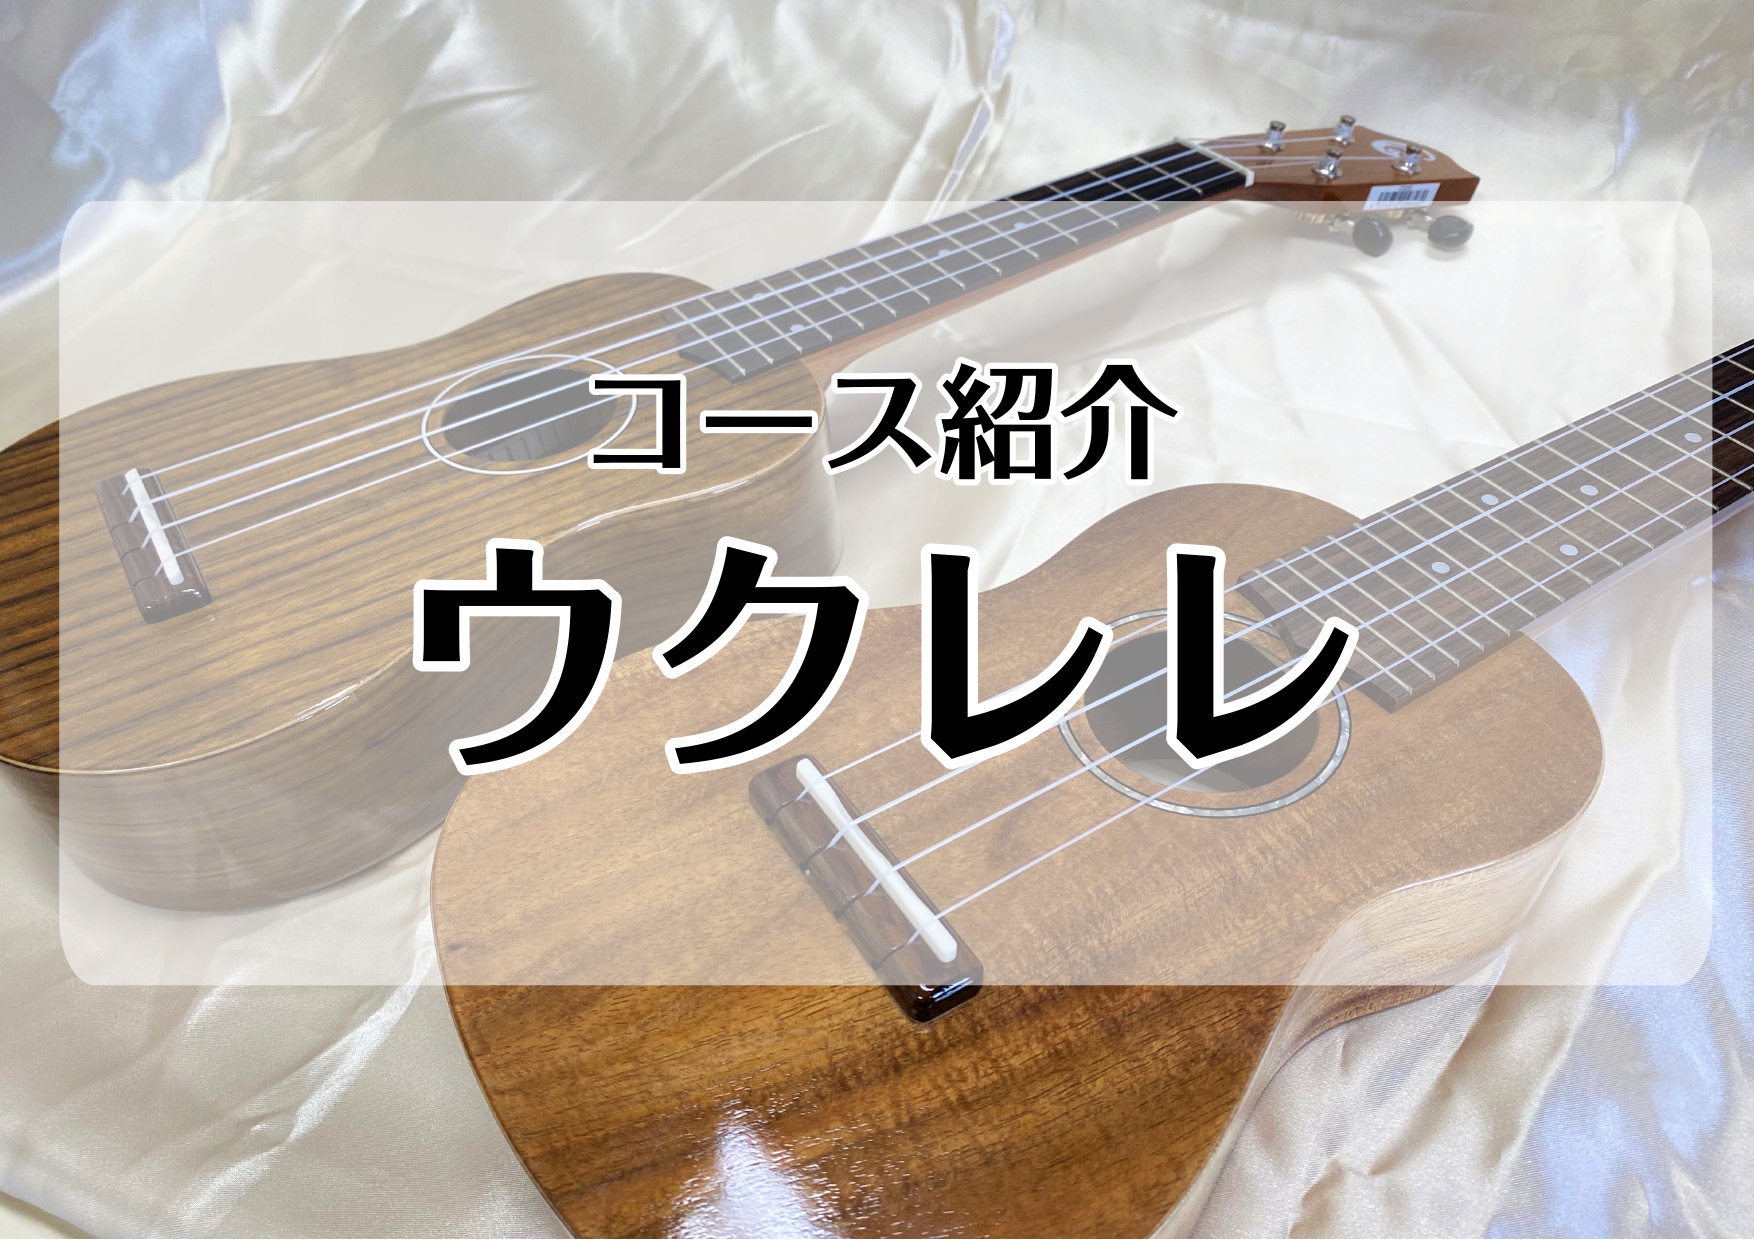 *[http://www.shimamura.co.jp/lesson/course/ukulele/:title=ウクレレ] ハワイ生まれの可愛らしい弦楽器・ウクレレ。軽やかで陽気な音色が魅力です。]]ハワイアン音楽だけでなく、ポップスやジャズなどどんなジャンルとも好相性です。]]小さくて持ち運び […]